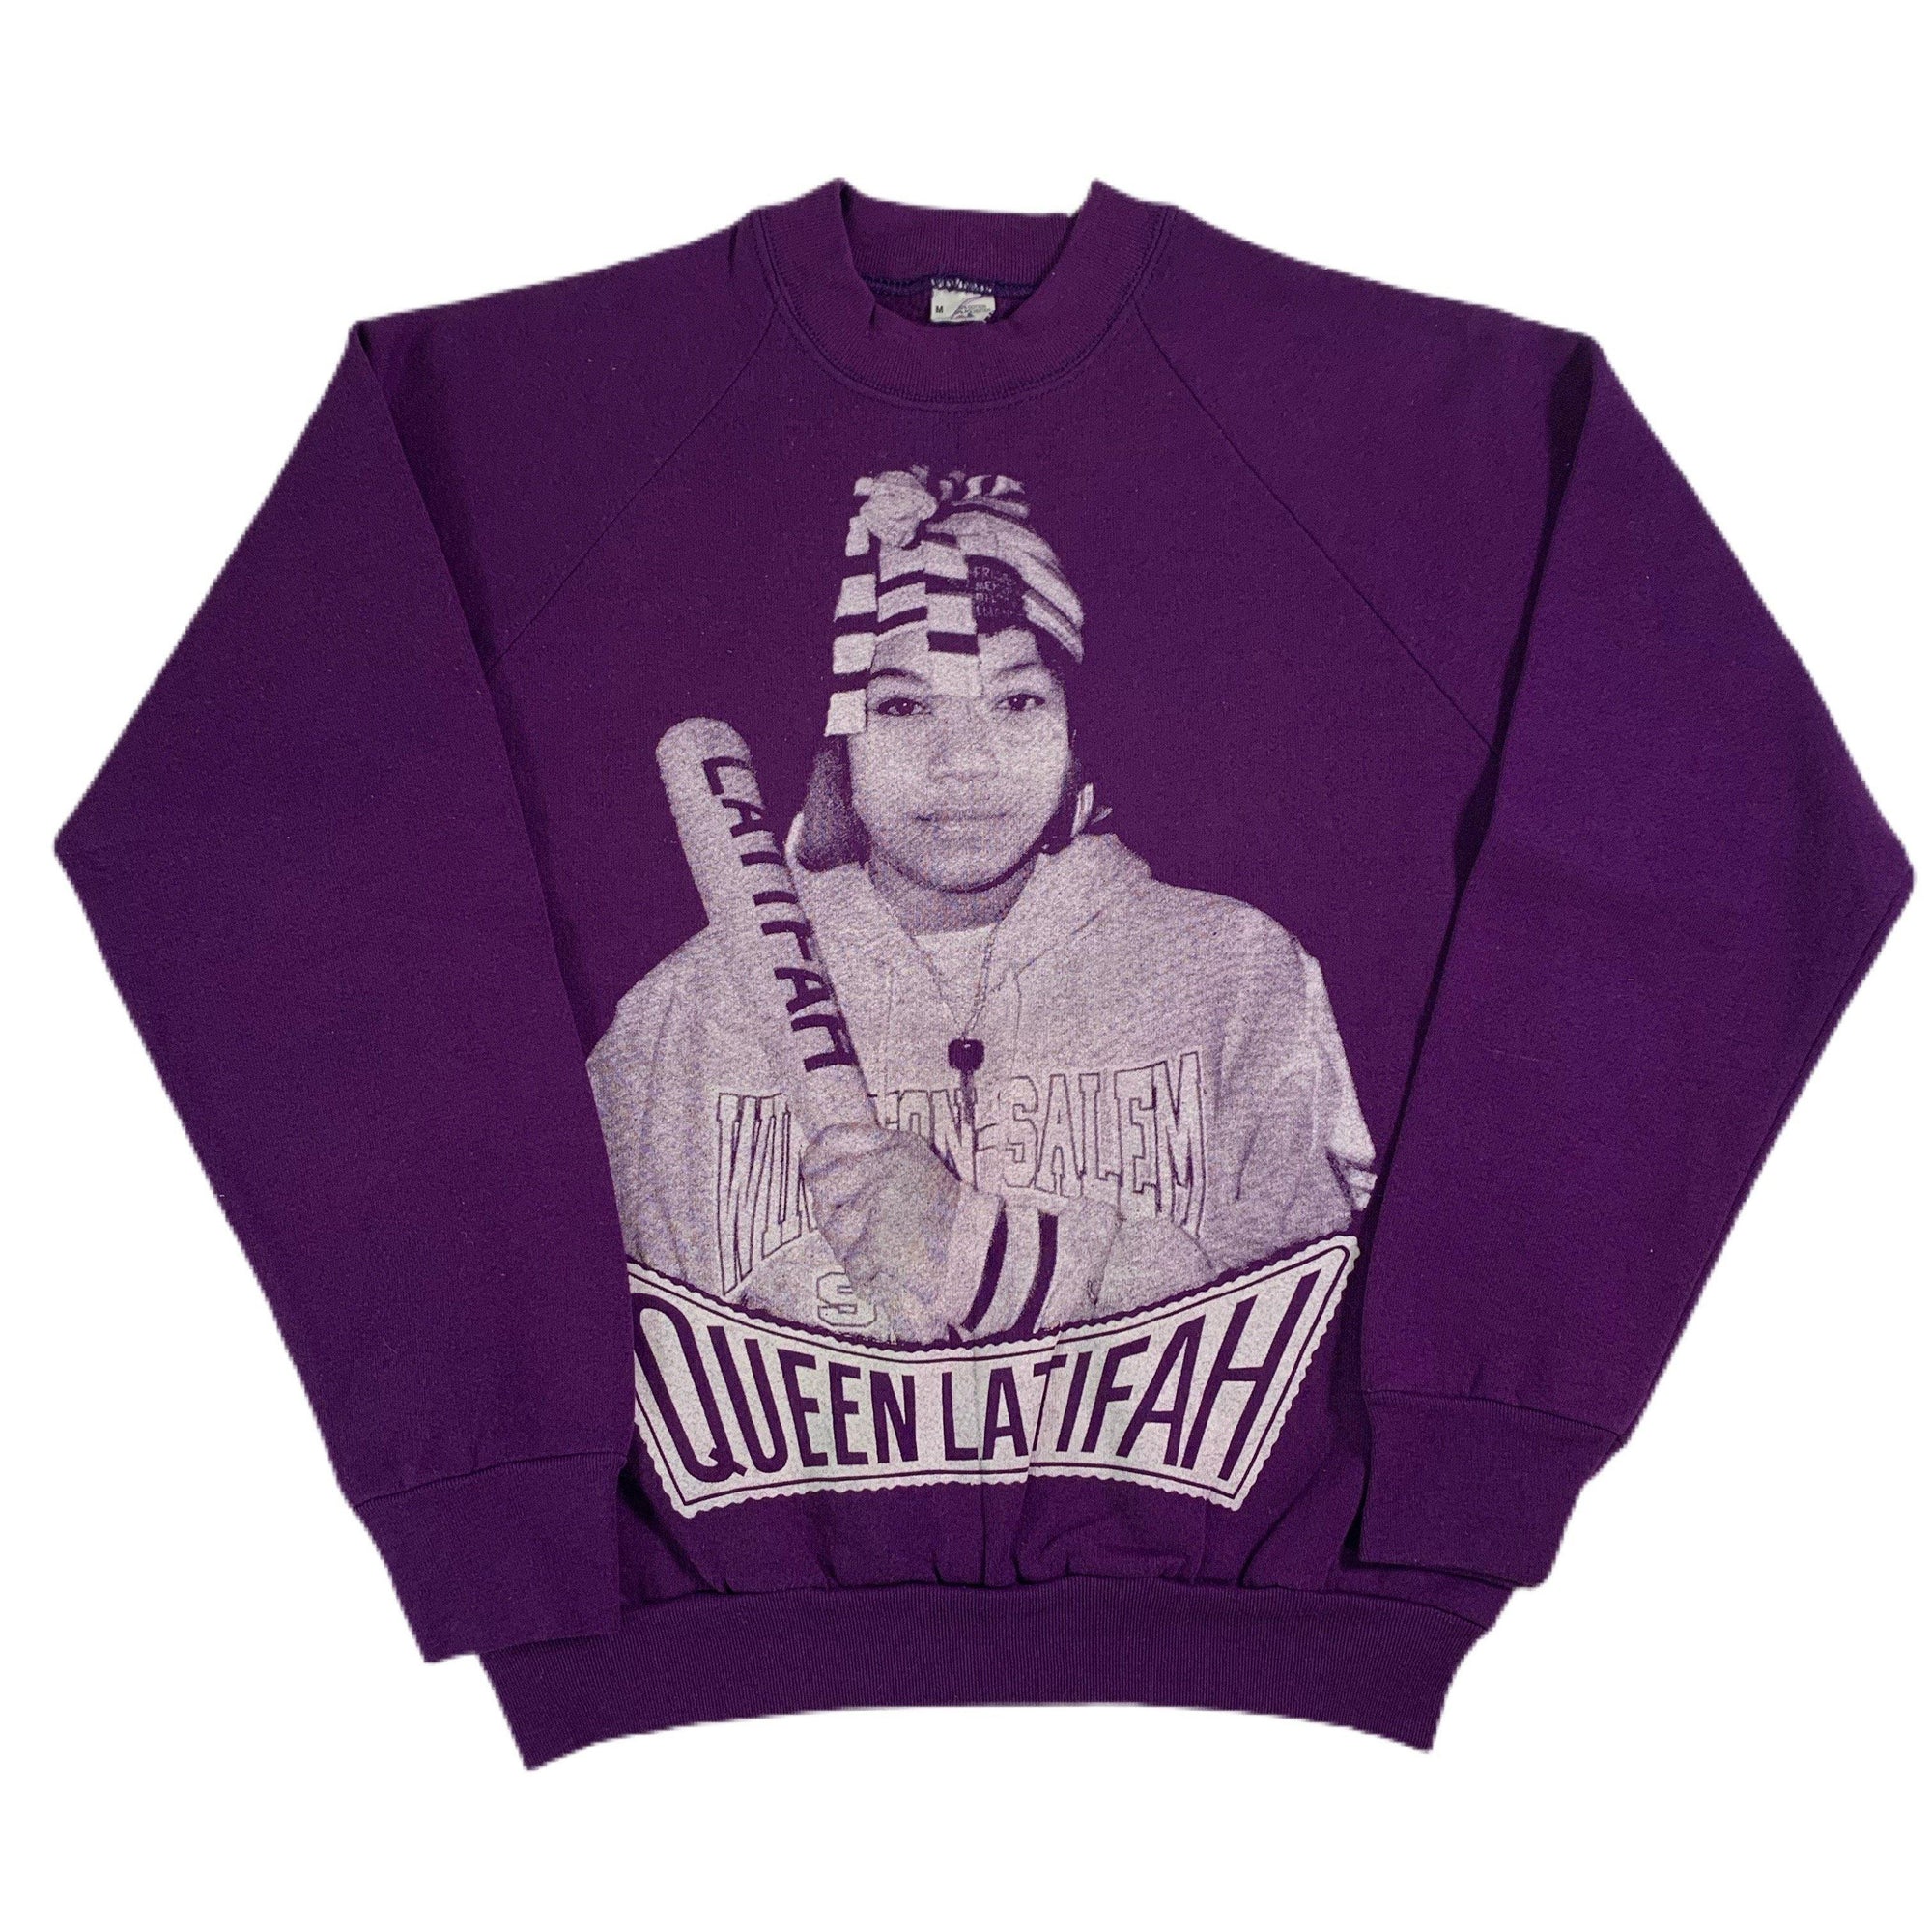 Vintage Queen Latifah "Queen" Crewneck Sweatshirt - jointcustodydc